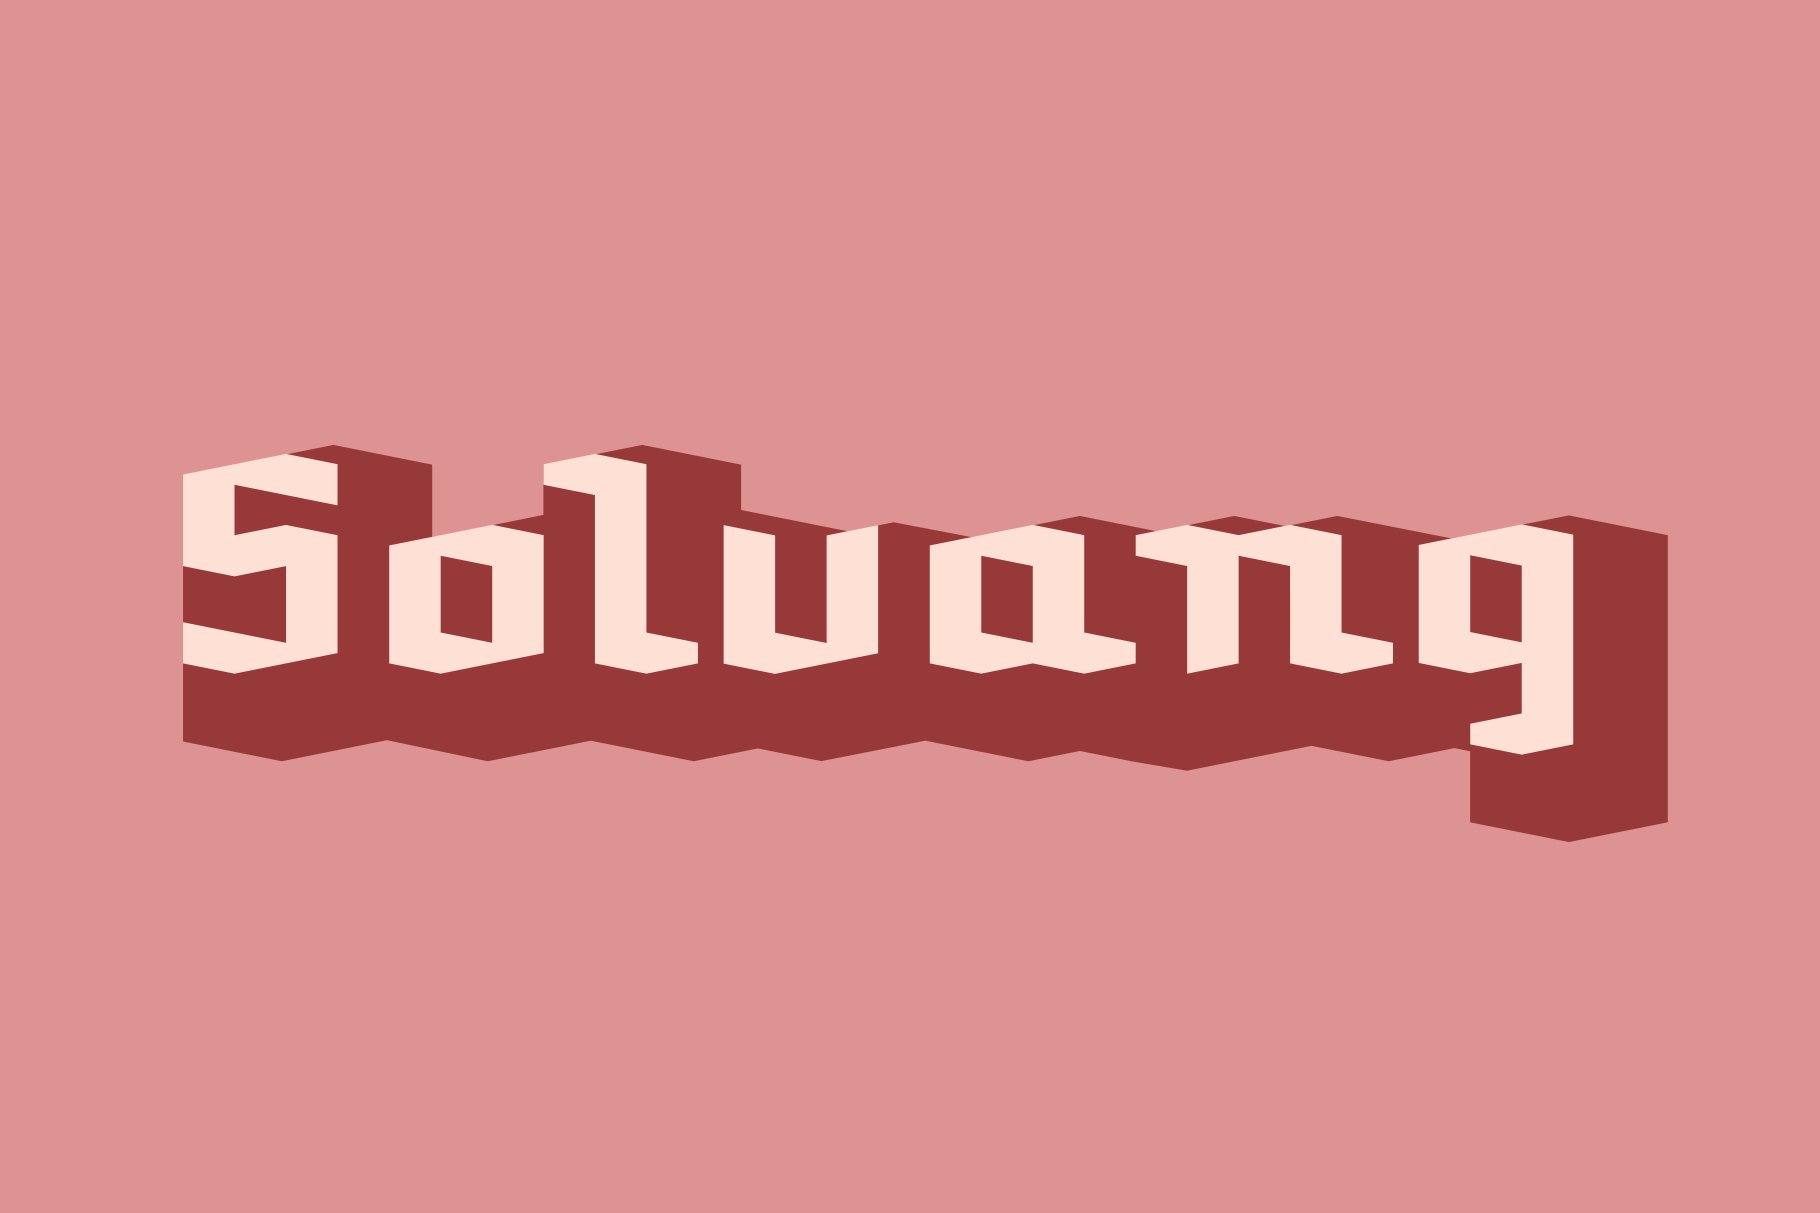 Solvang | A Modern Blackletter cover image.